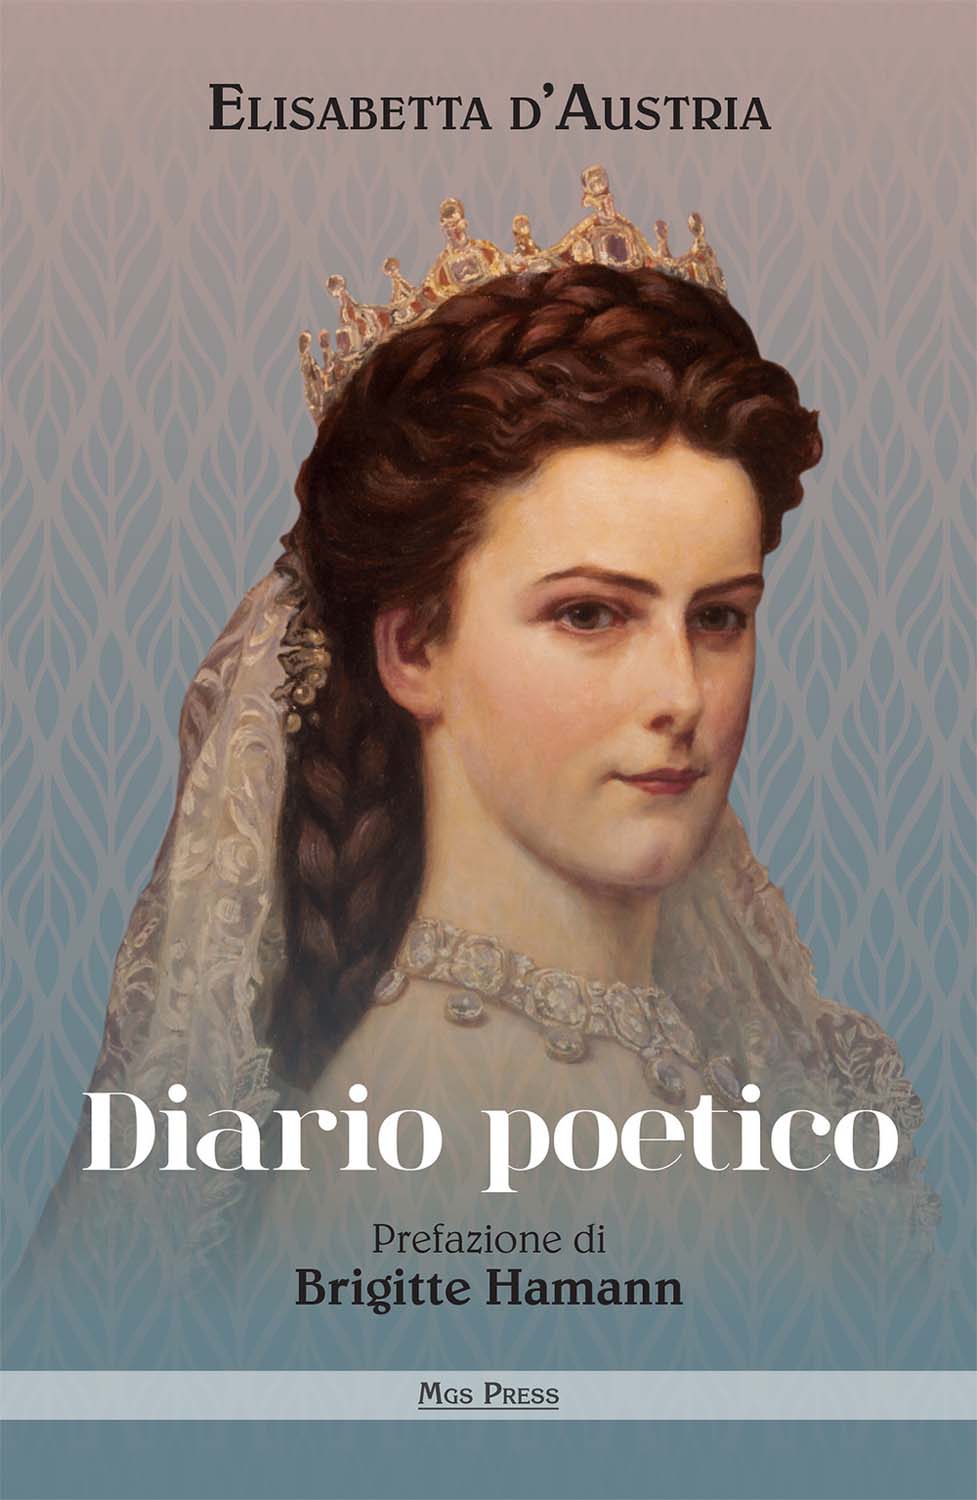 Libri d'Austria Elisabetta - Diario Poetico NUOVO SIGILLATO, EDIZIONE DEL 28/08/2018 SUBITO DISPONIBILE